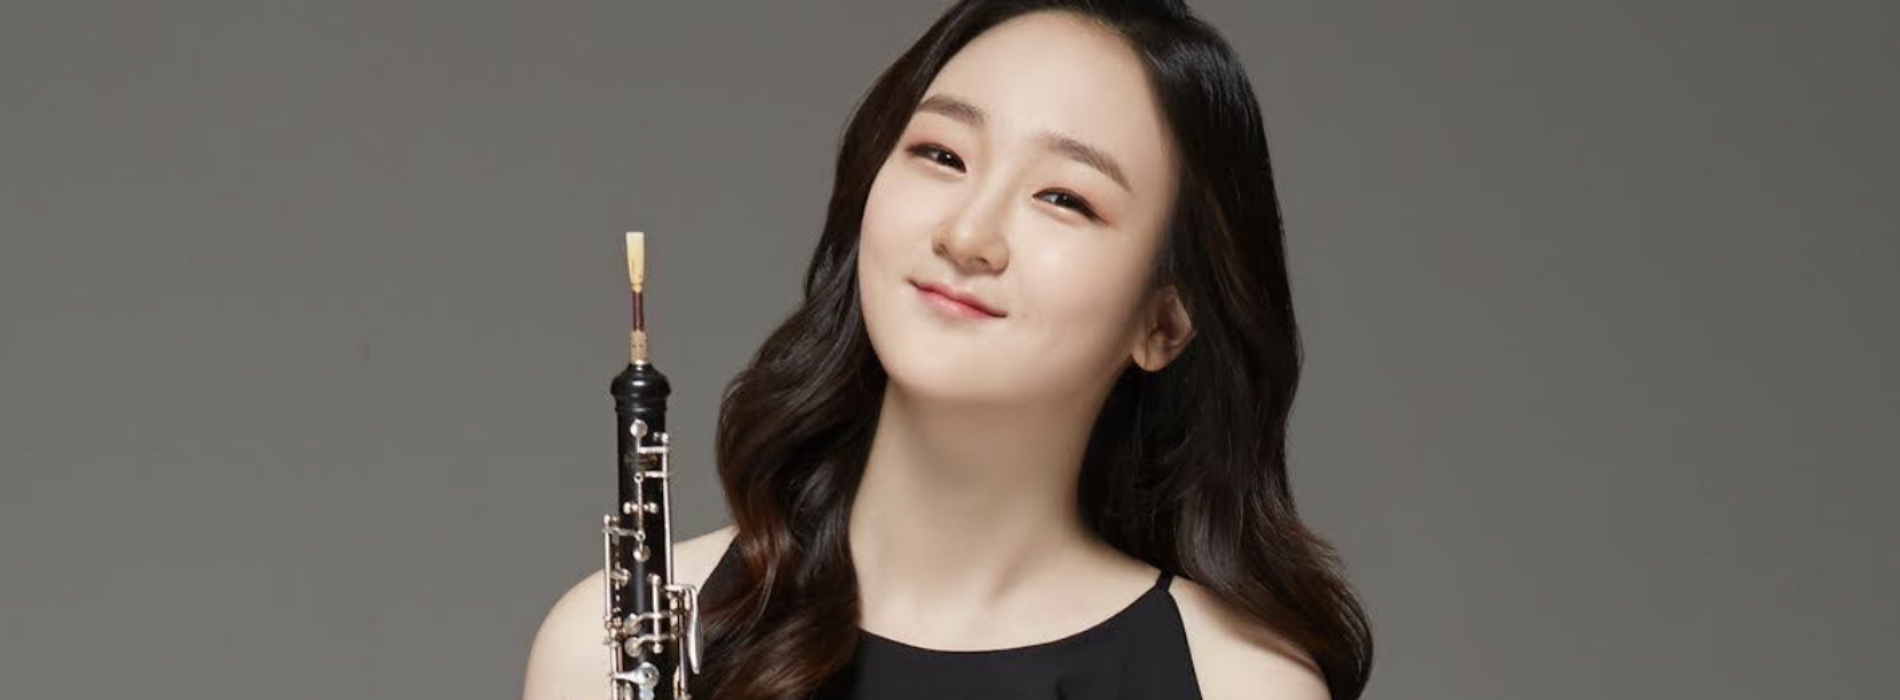 Reggia. Primavera Mozartiana, concerto dell’oboista Hyun Jung Song